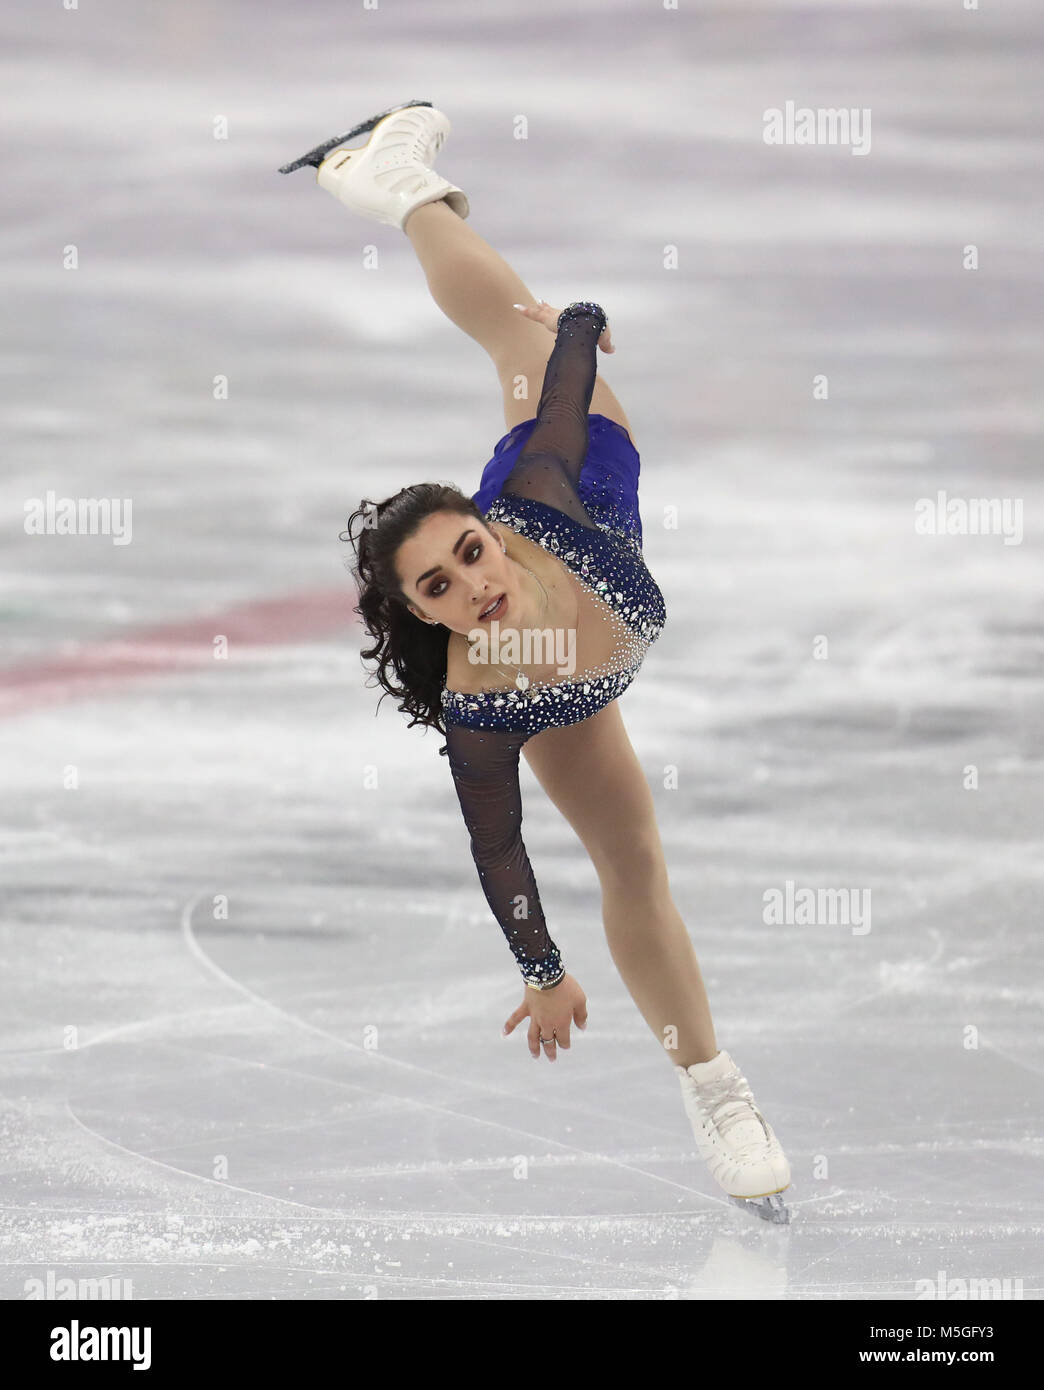 La canadiense Gabrielle Daleman en las Damas solo Patinaje artístico en el Gangneung Ice Arena durante el día catorce de los Juegos Olímpicos de Invierno de 2018 PyeongChang en Corea del Sur. Foto de stock